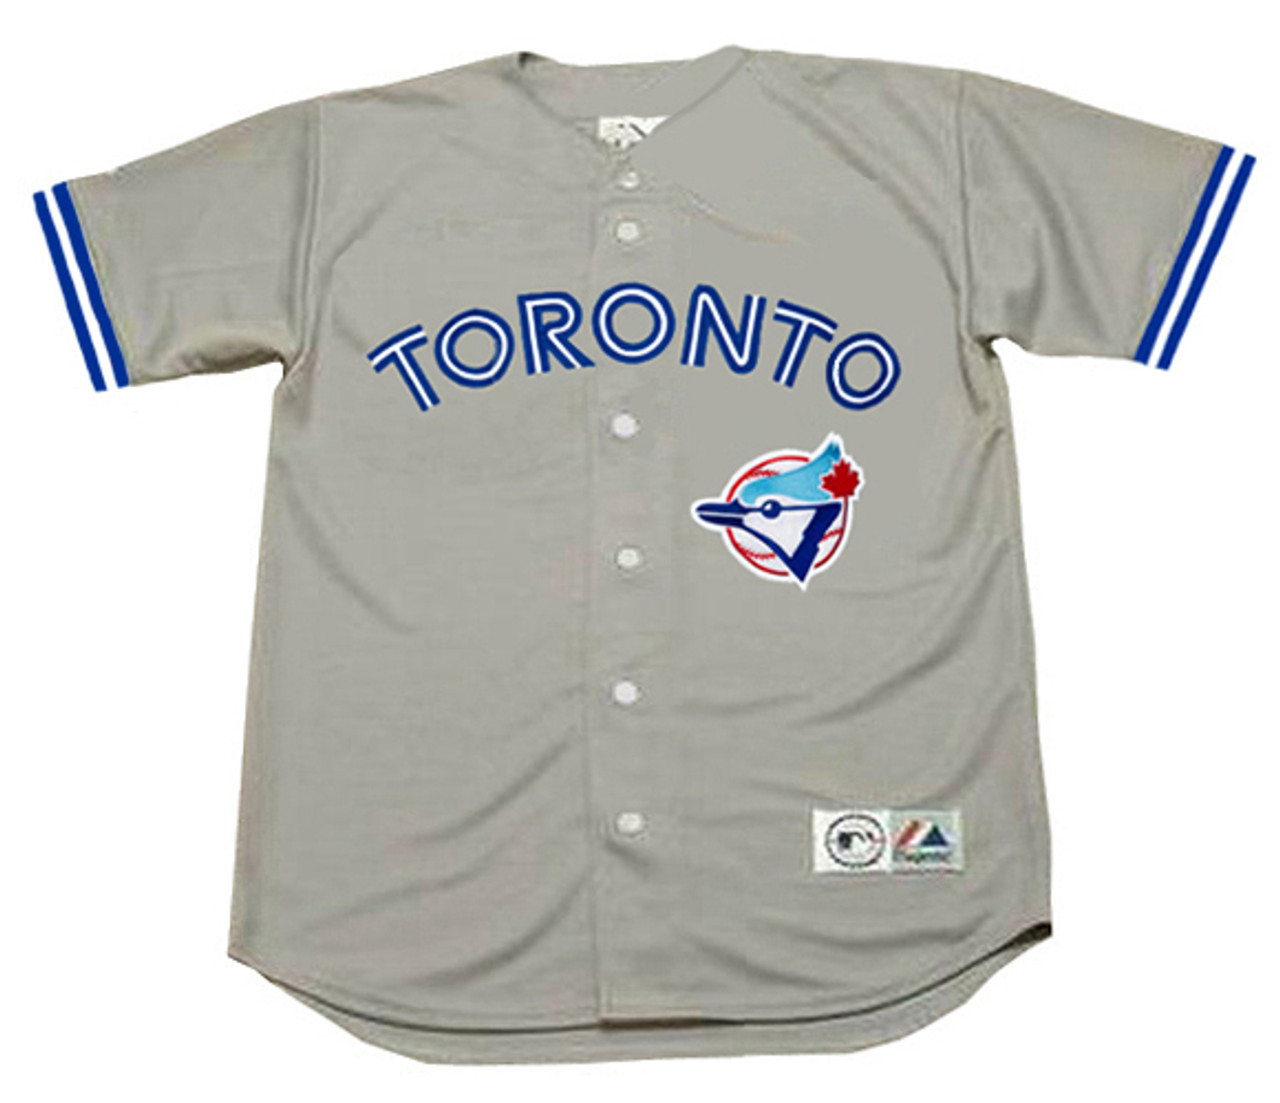 Toronto Blue Jays Baseball Jerseys - MLB Custom Throwback Jerseys